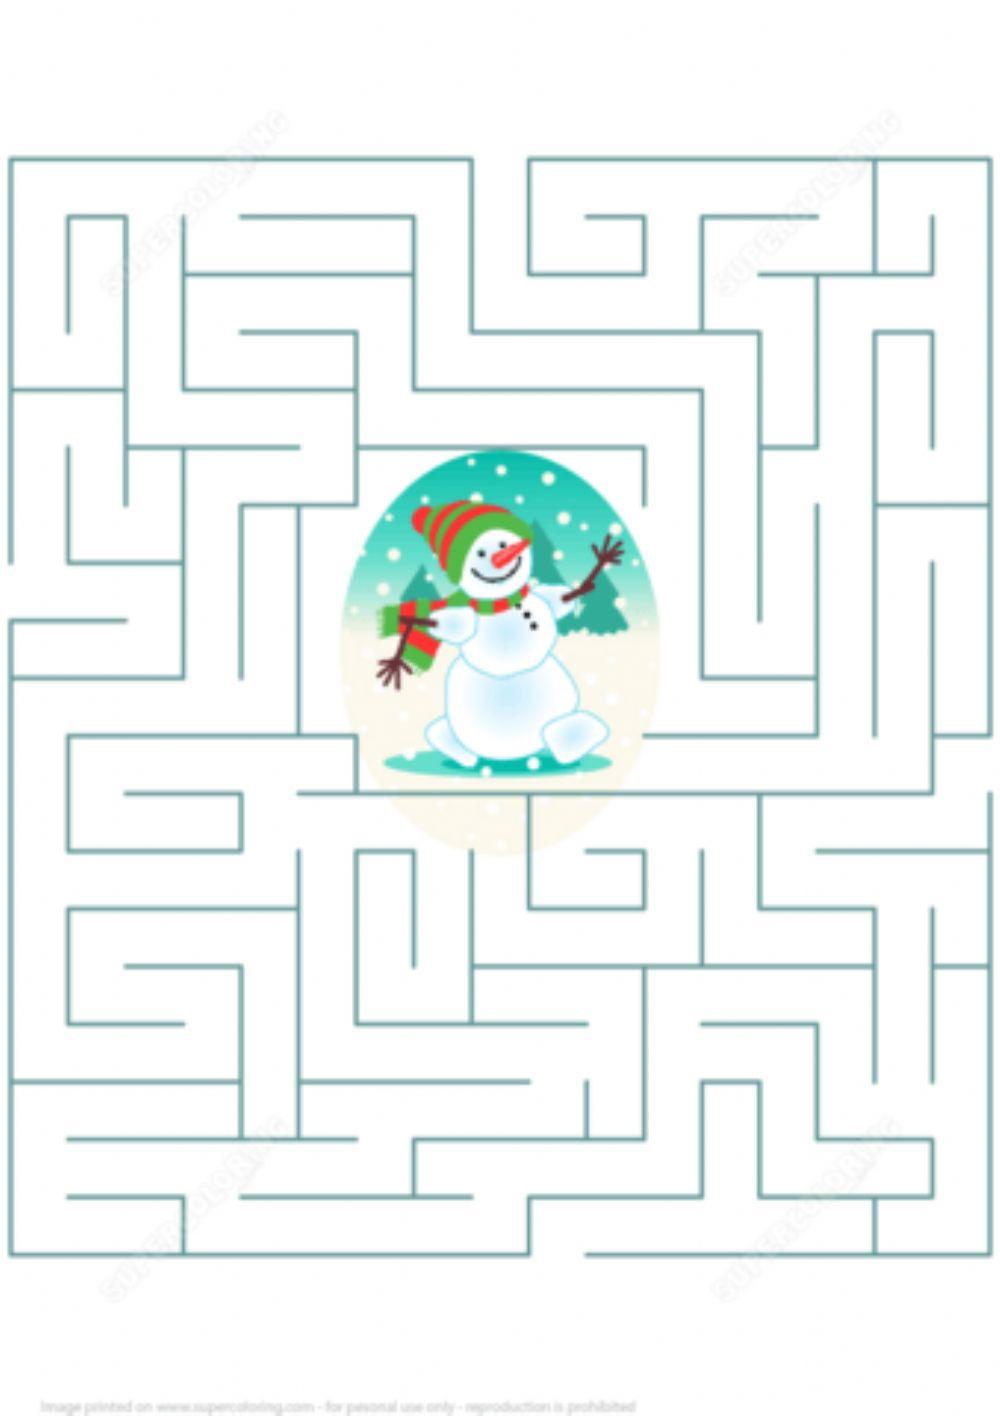 Ajută omul de zăpadă să iasă din labirint